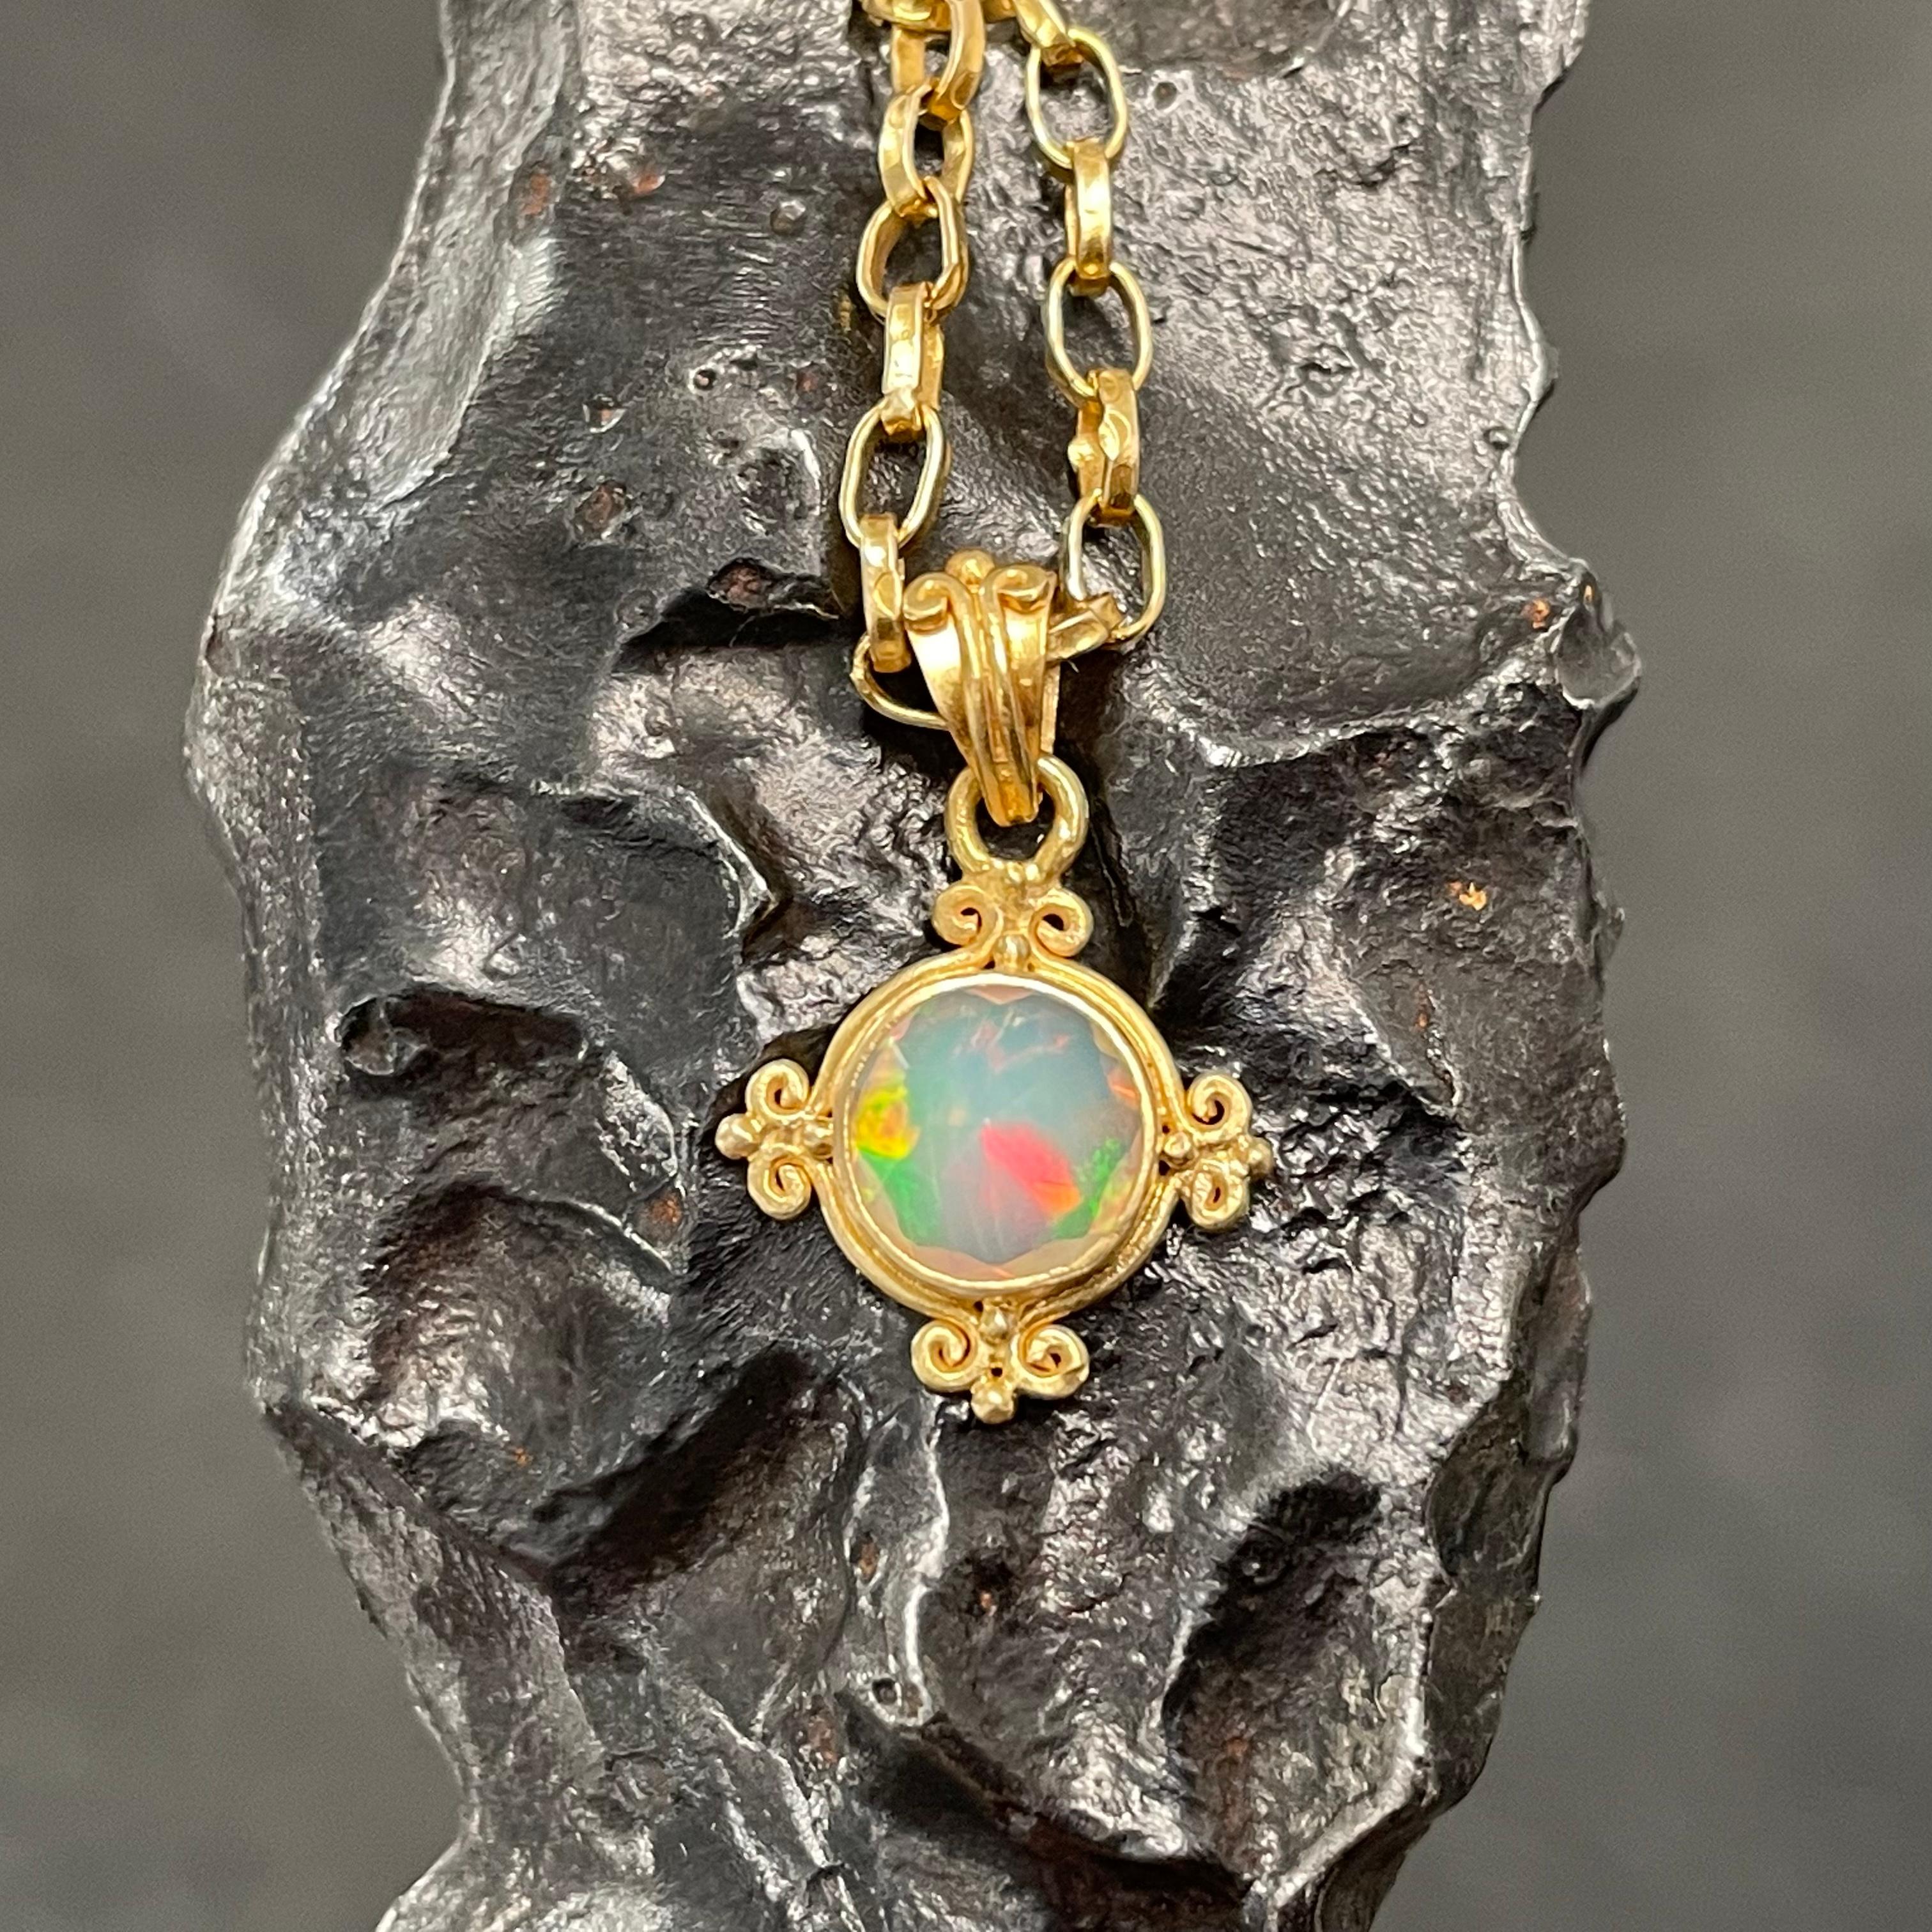 Une ardente opale ronde de 7 mm à facettes de la mine de Welo, en Éthiopie, est sertie dans une délicate étreinte en or 18K à quatre côtés, faite à la main, en forme de 